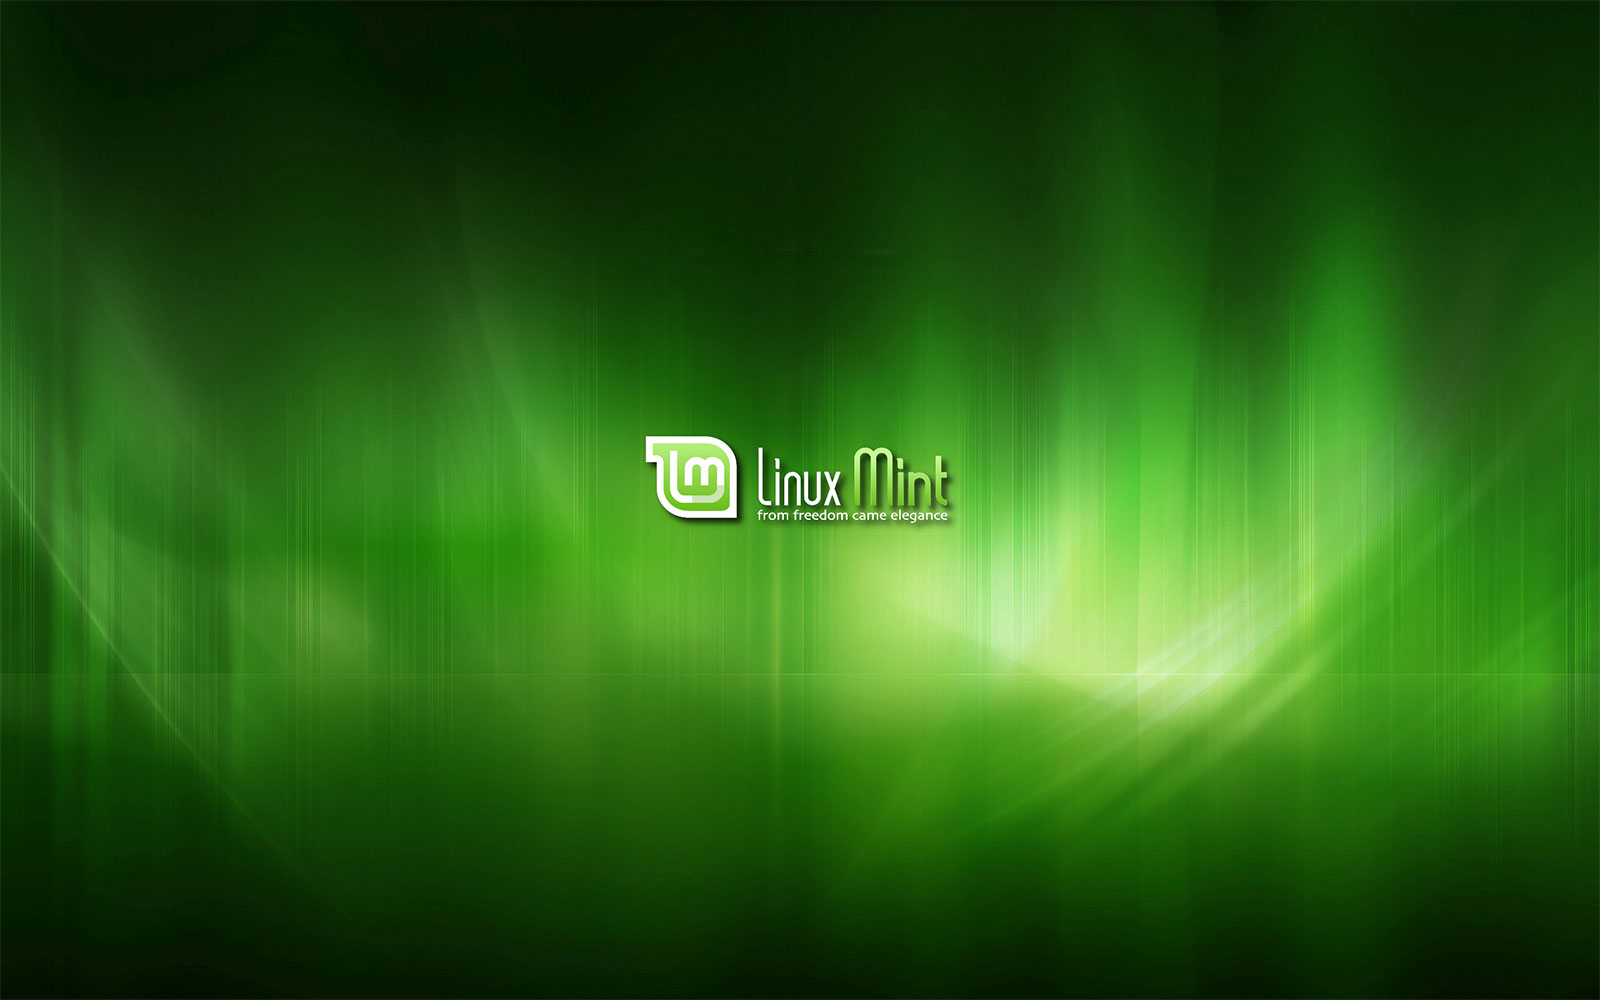 Linux Mint đã chọn lựa những hình nền đẹp và bắt mắt nhất để cài đặt mặc định cho người dùng. Bạn có muốn xem ngay không?